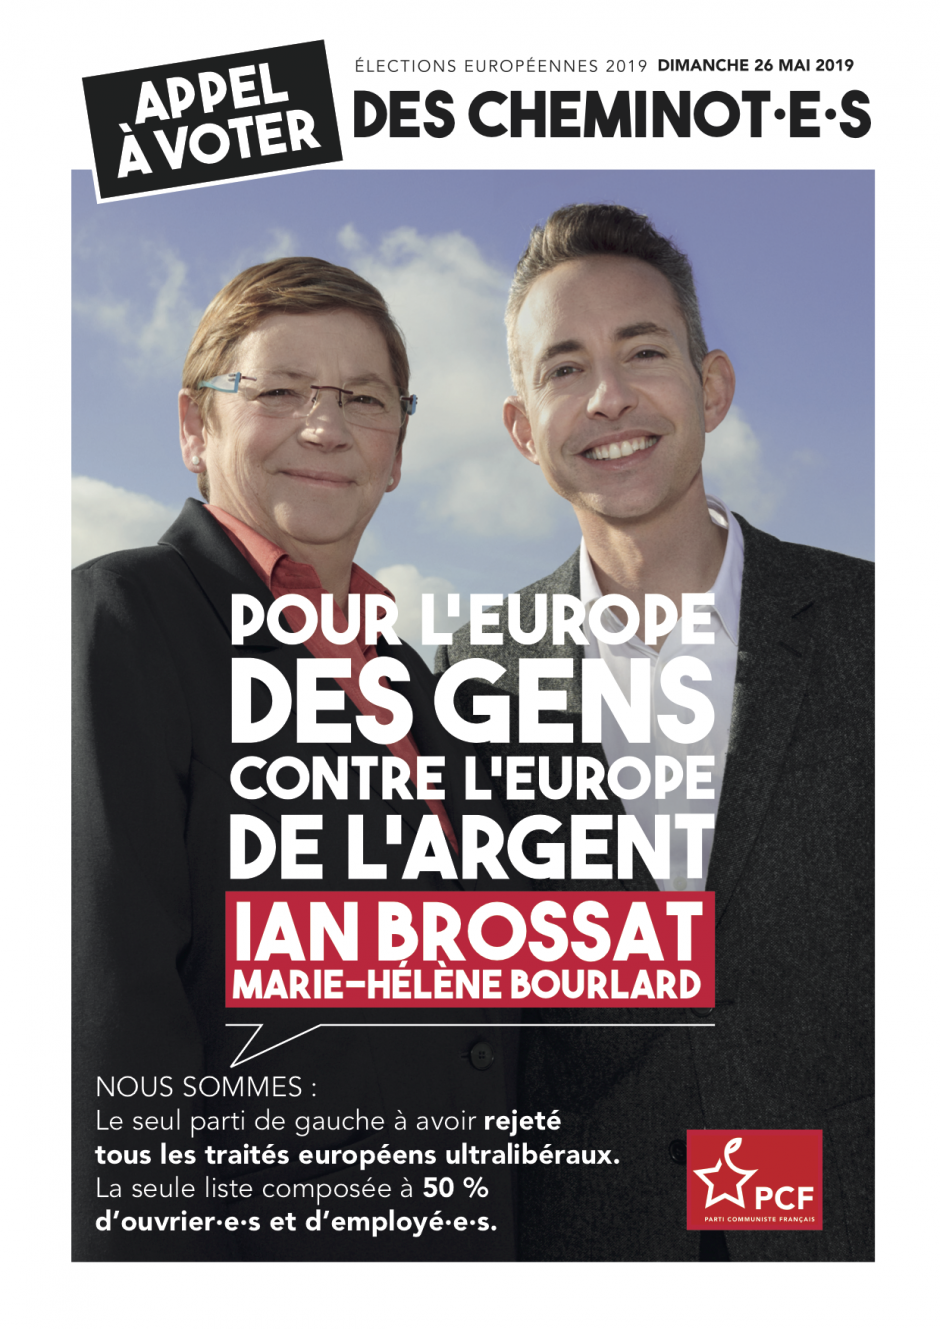 Européennes 2019. Appel à voter des cheminot.e.s pour Ian Brossat